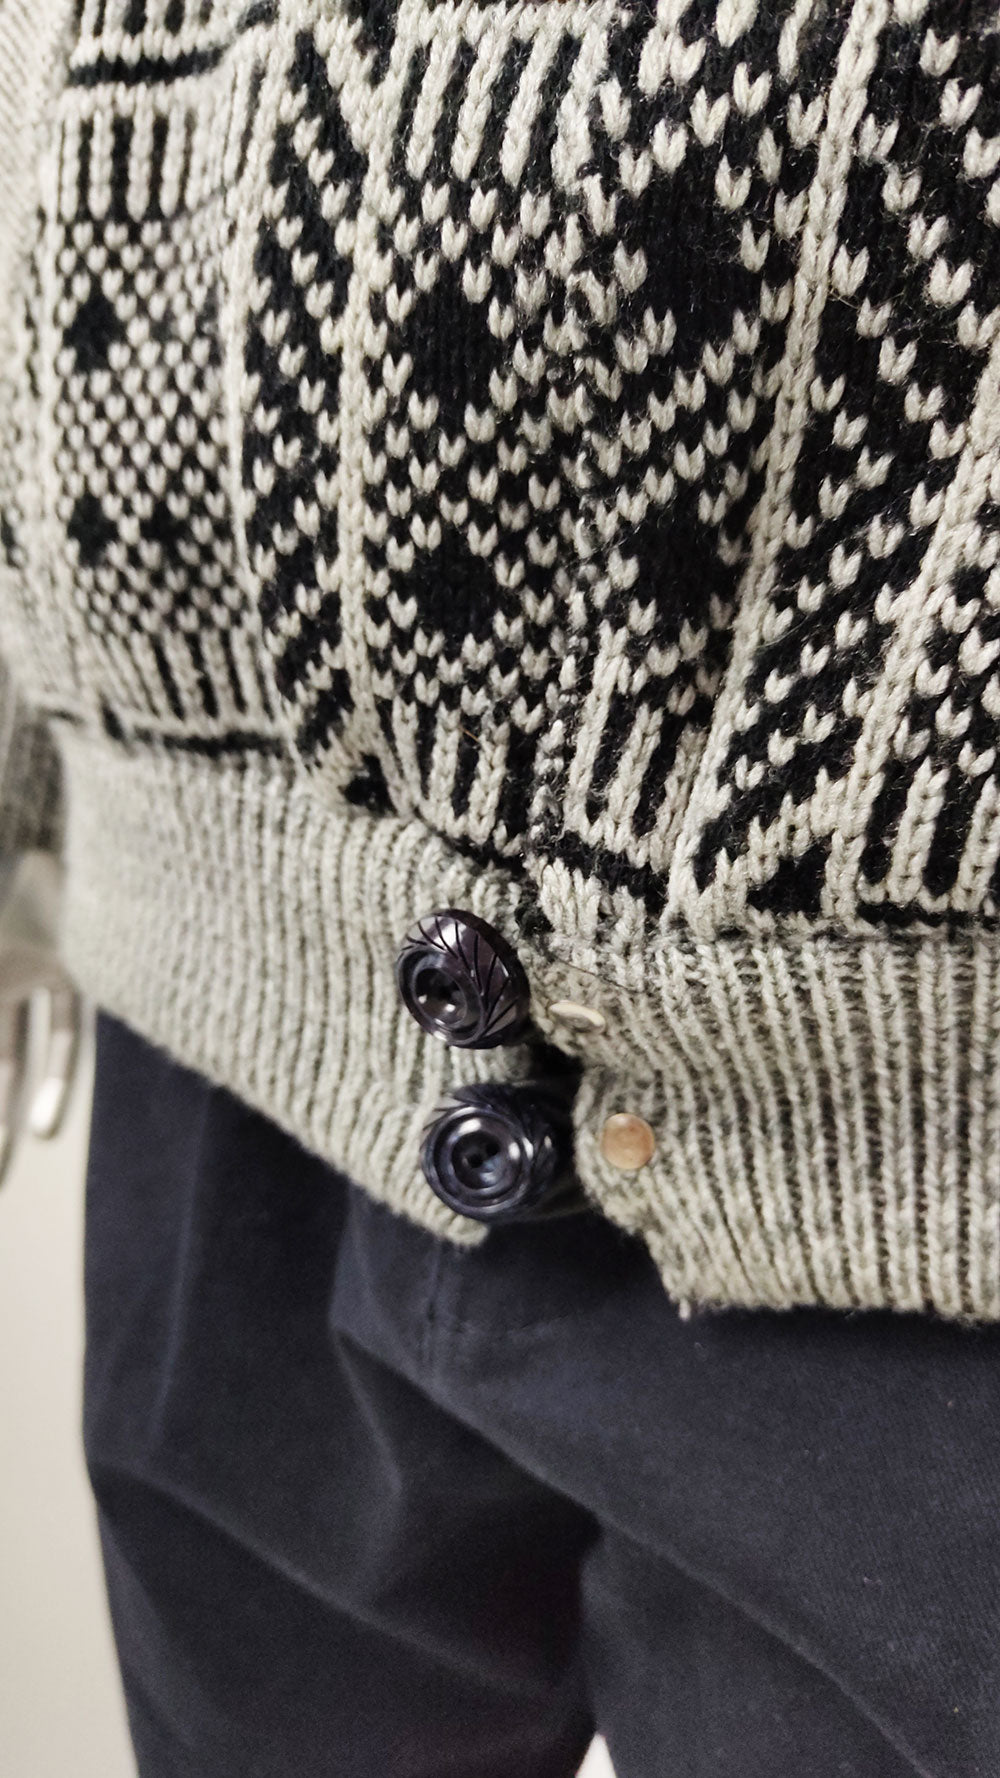 Vintage Mens Knit & Black Leather Zip Front Jacket, 1980s